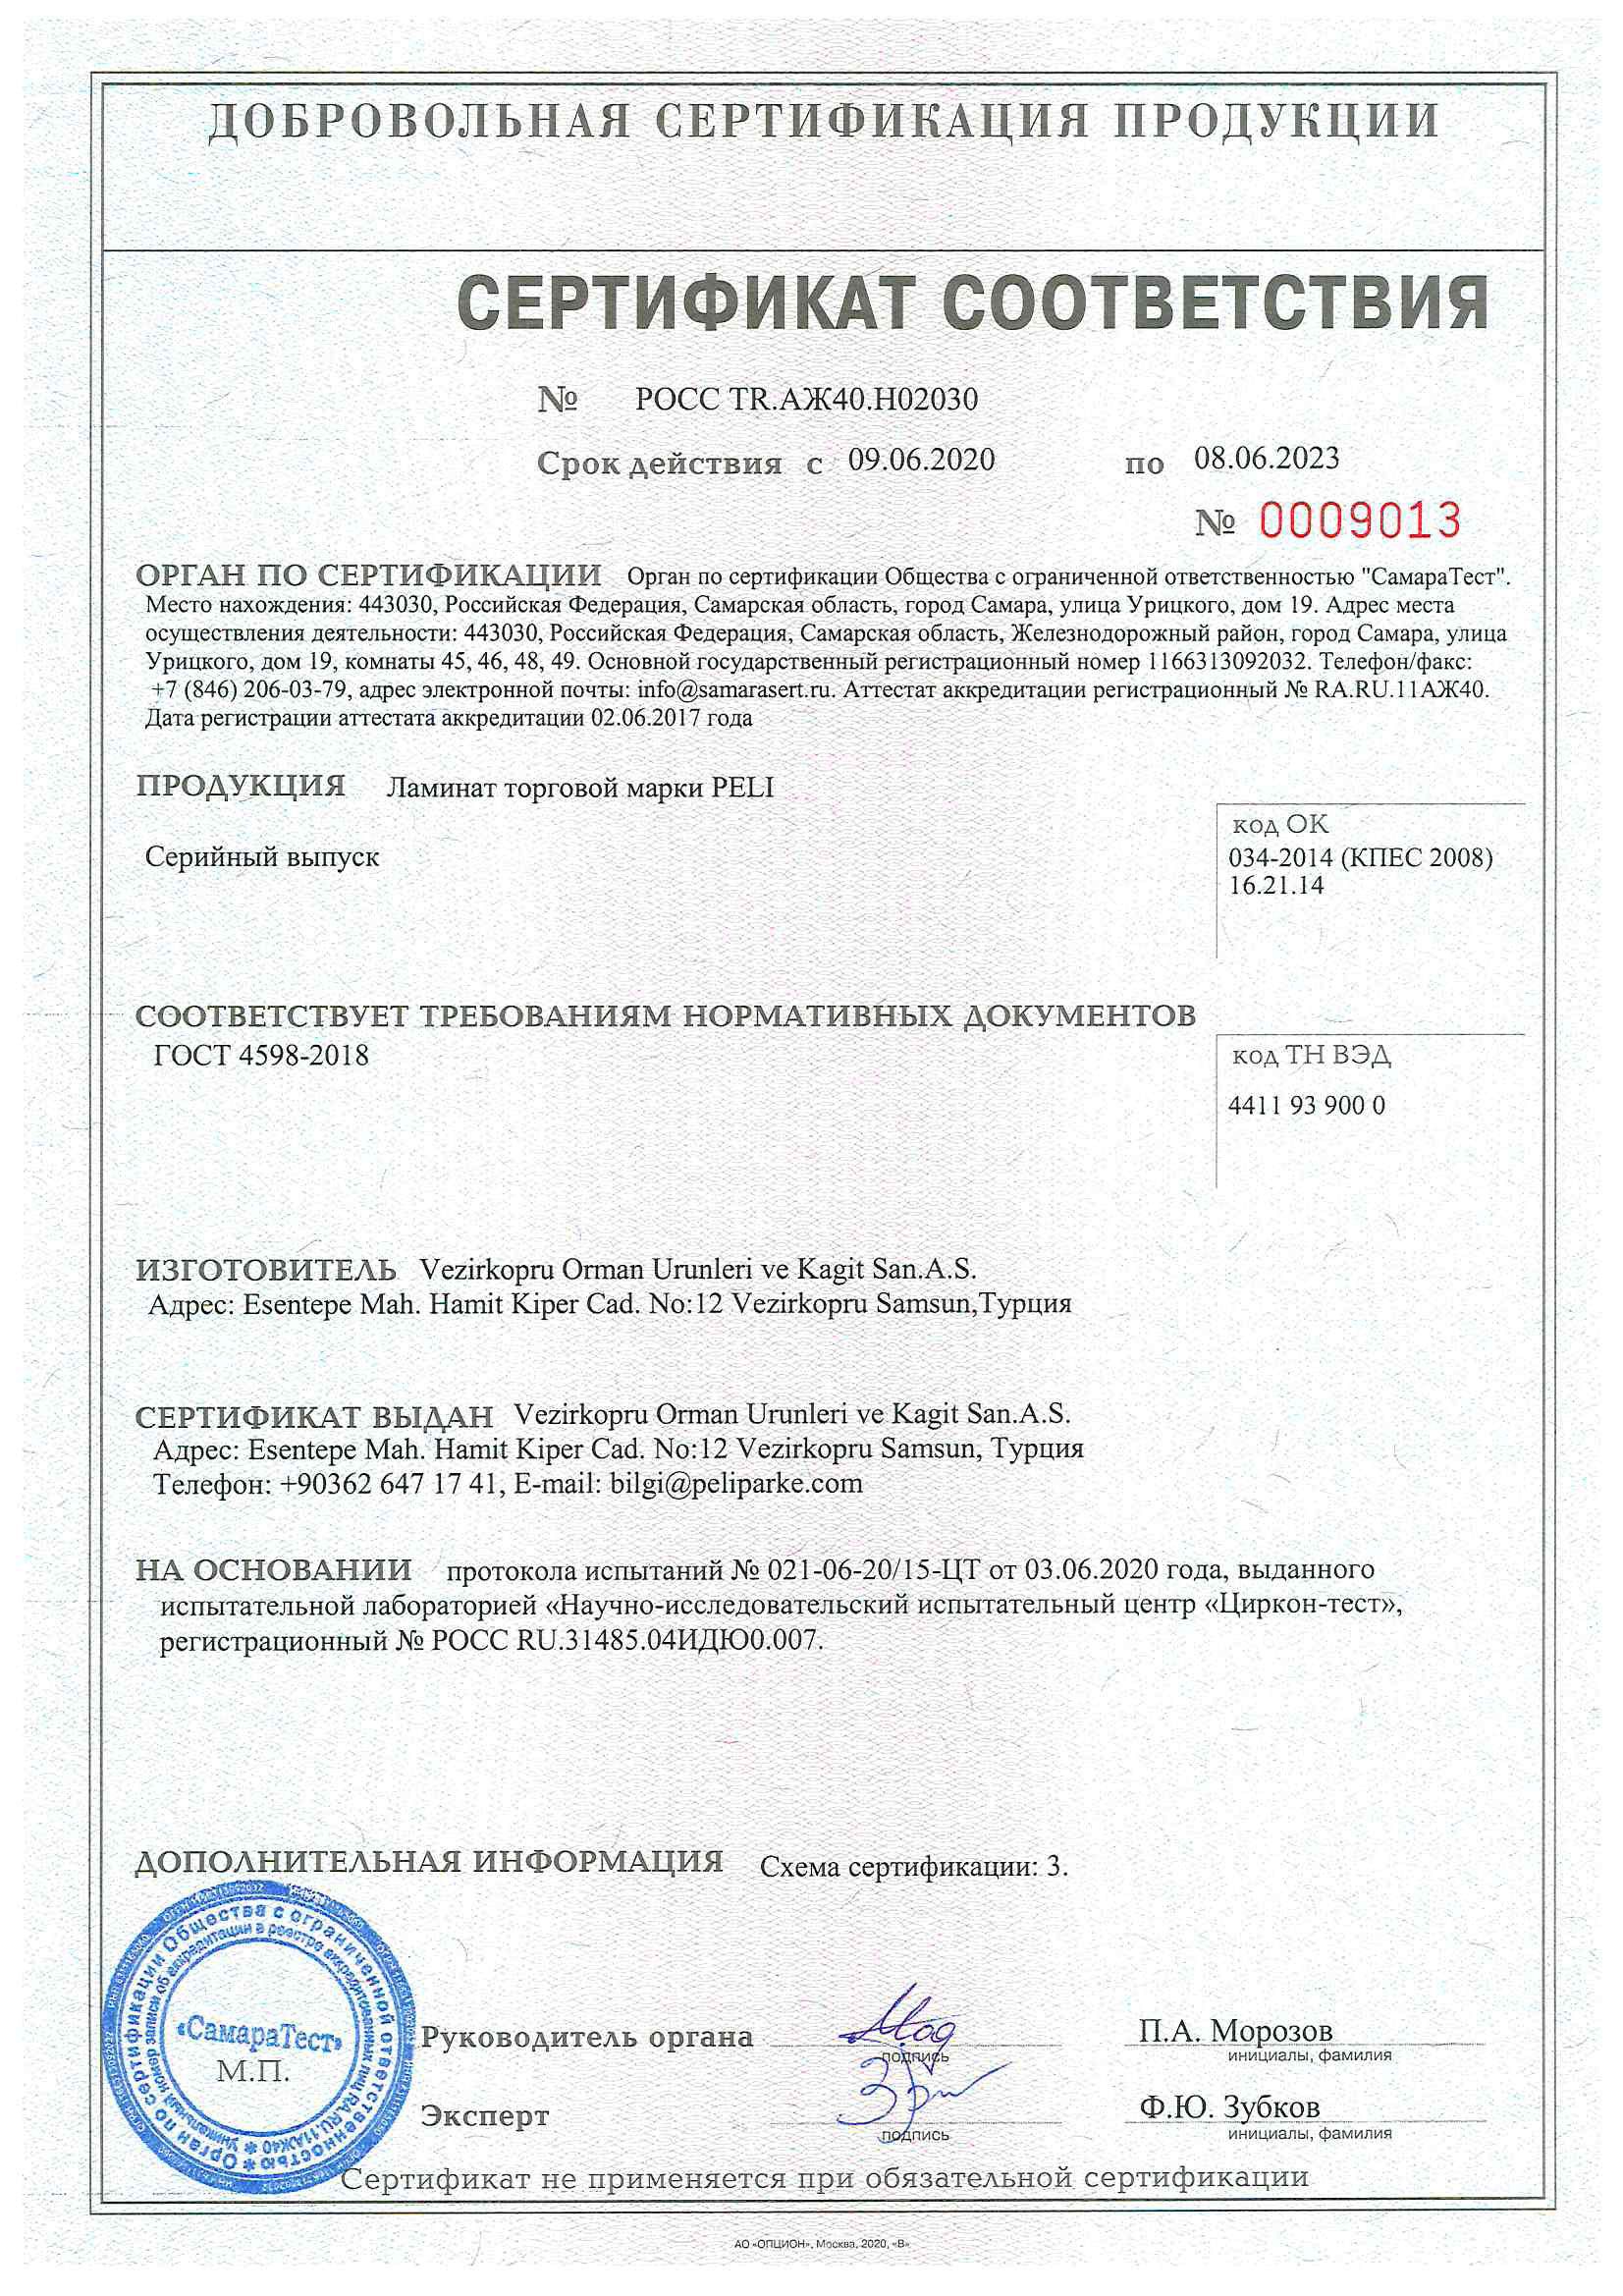 Сертификат соответствия РФ